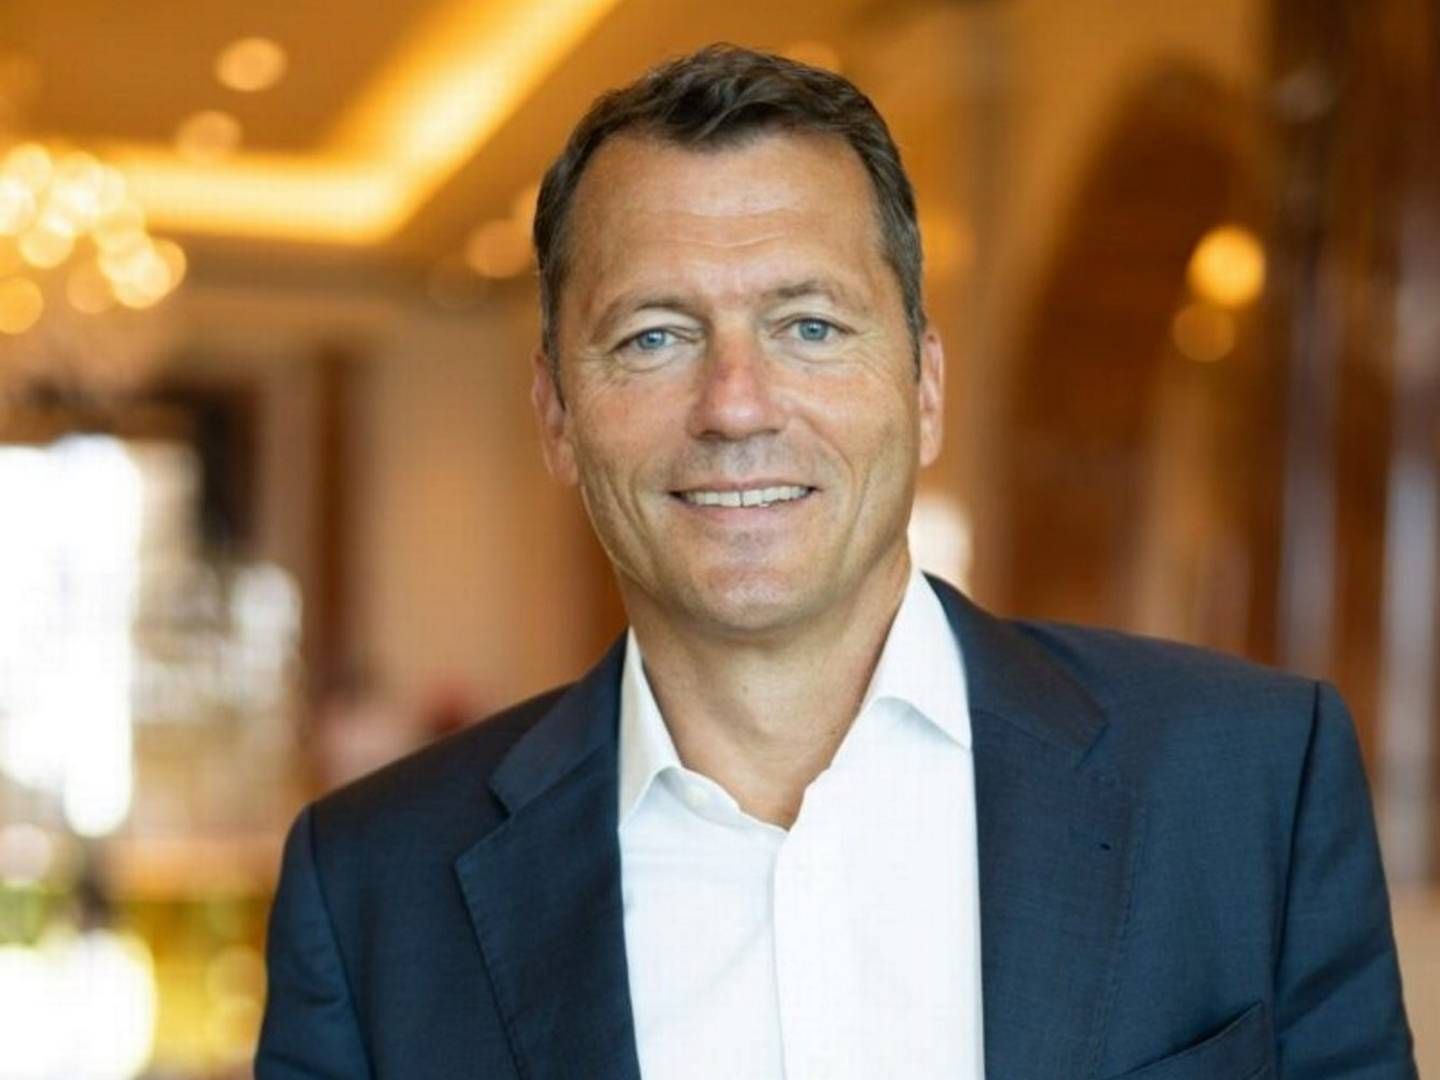 CEO of Topsoe Jan Toschka | Photo: Shell